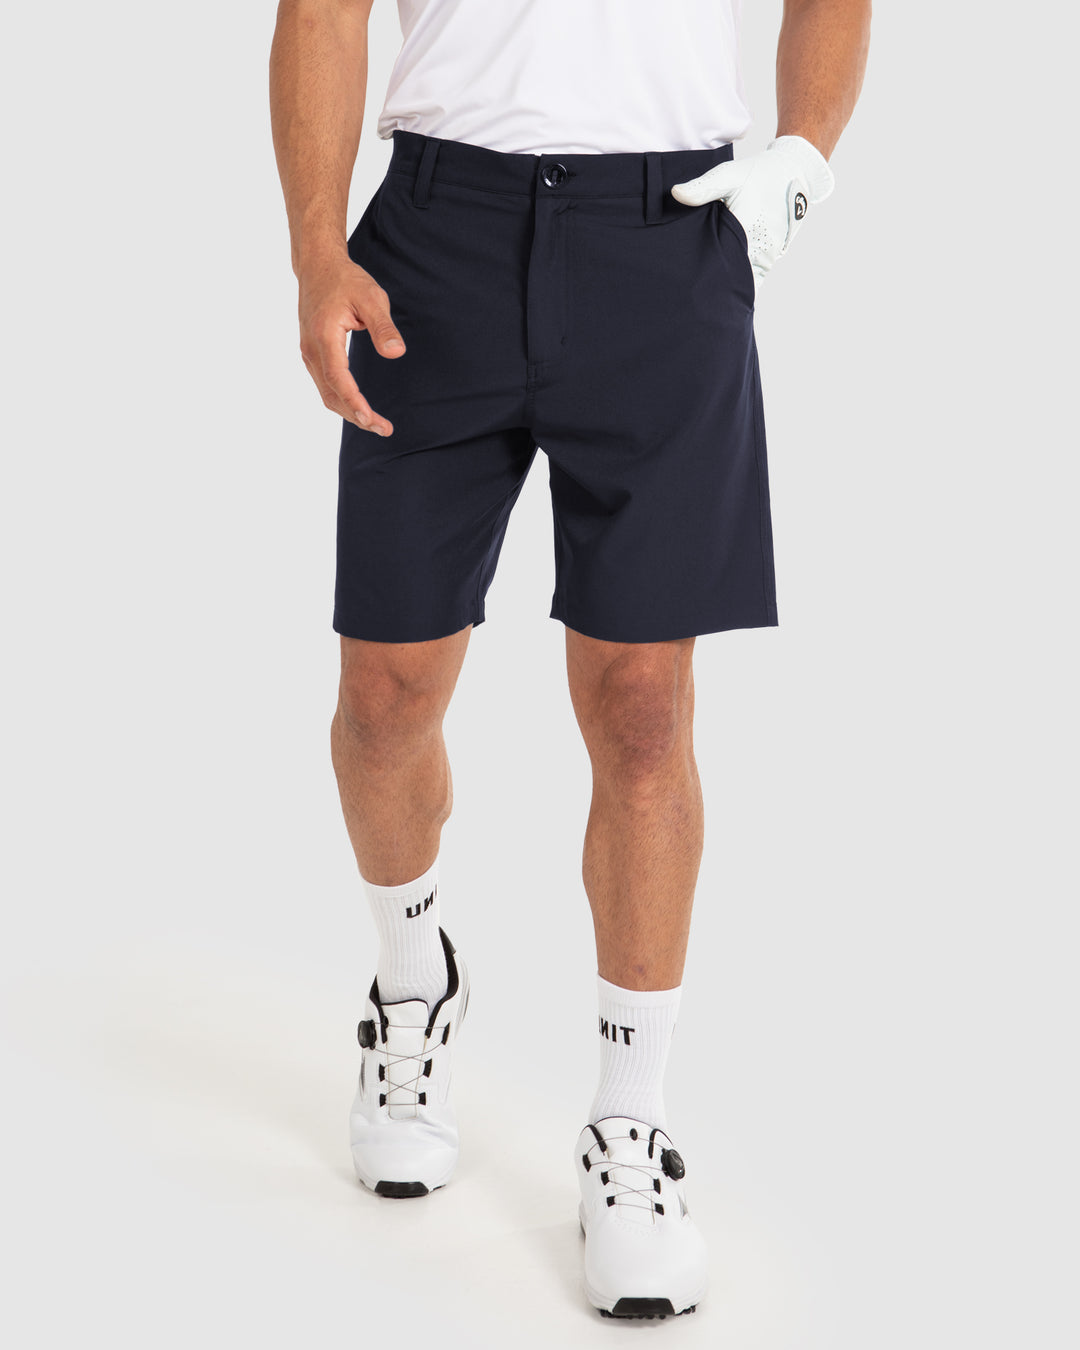 UNIT Mens Golf Flexlite Stretch Shorts